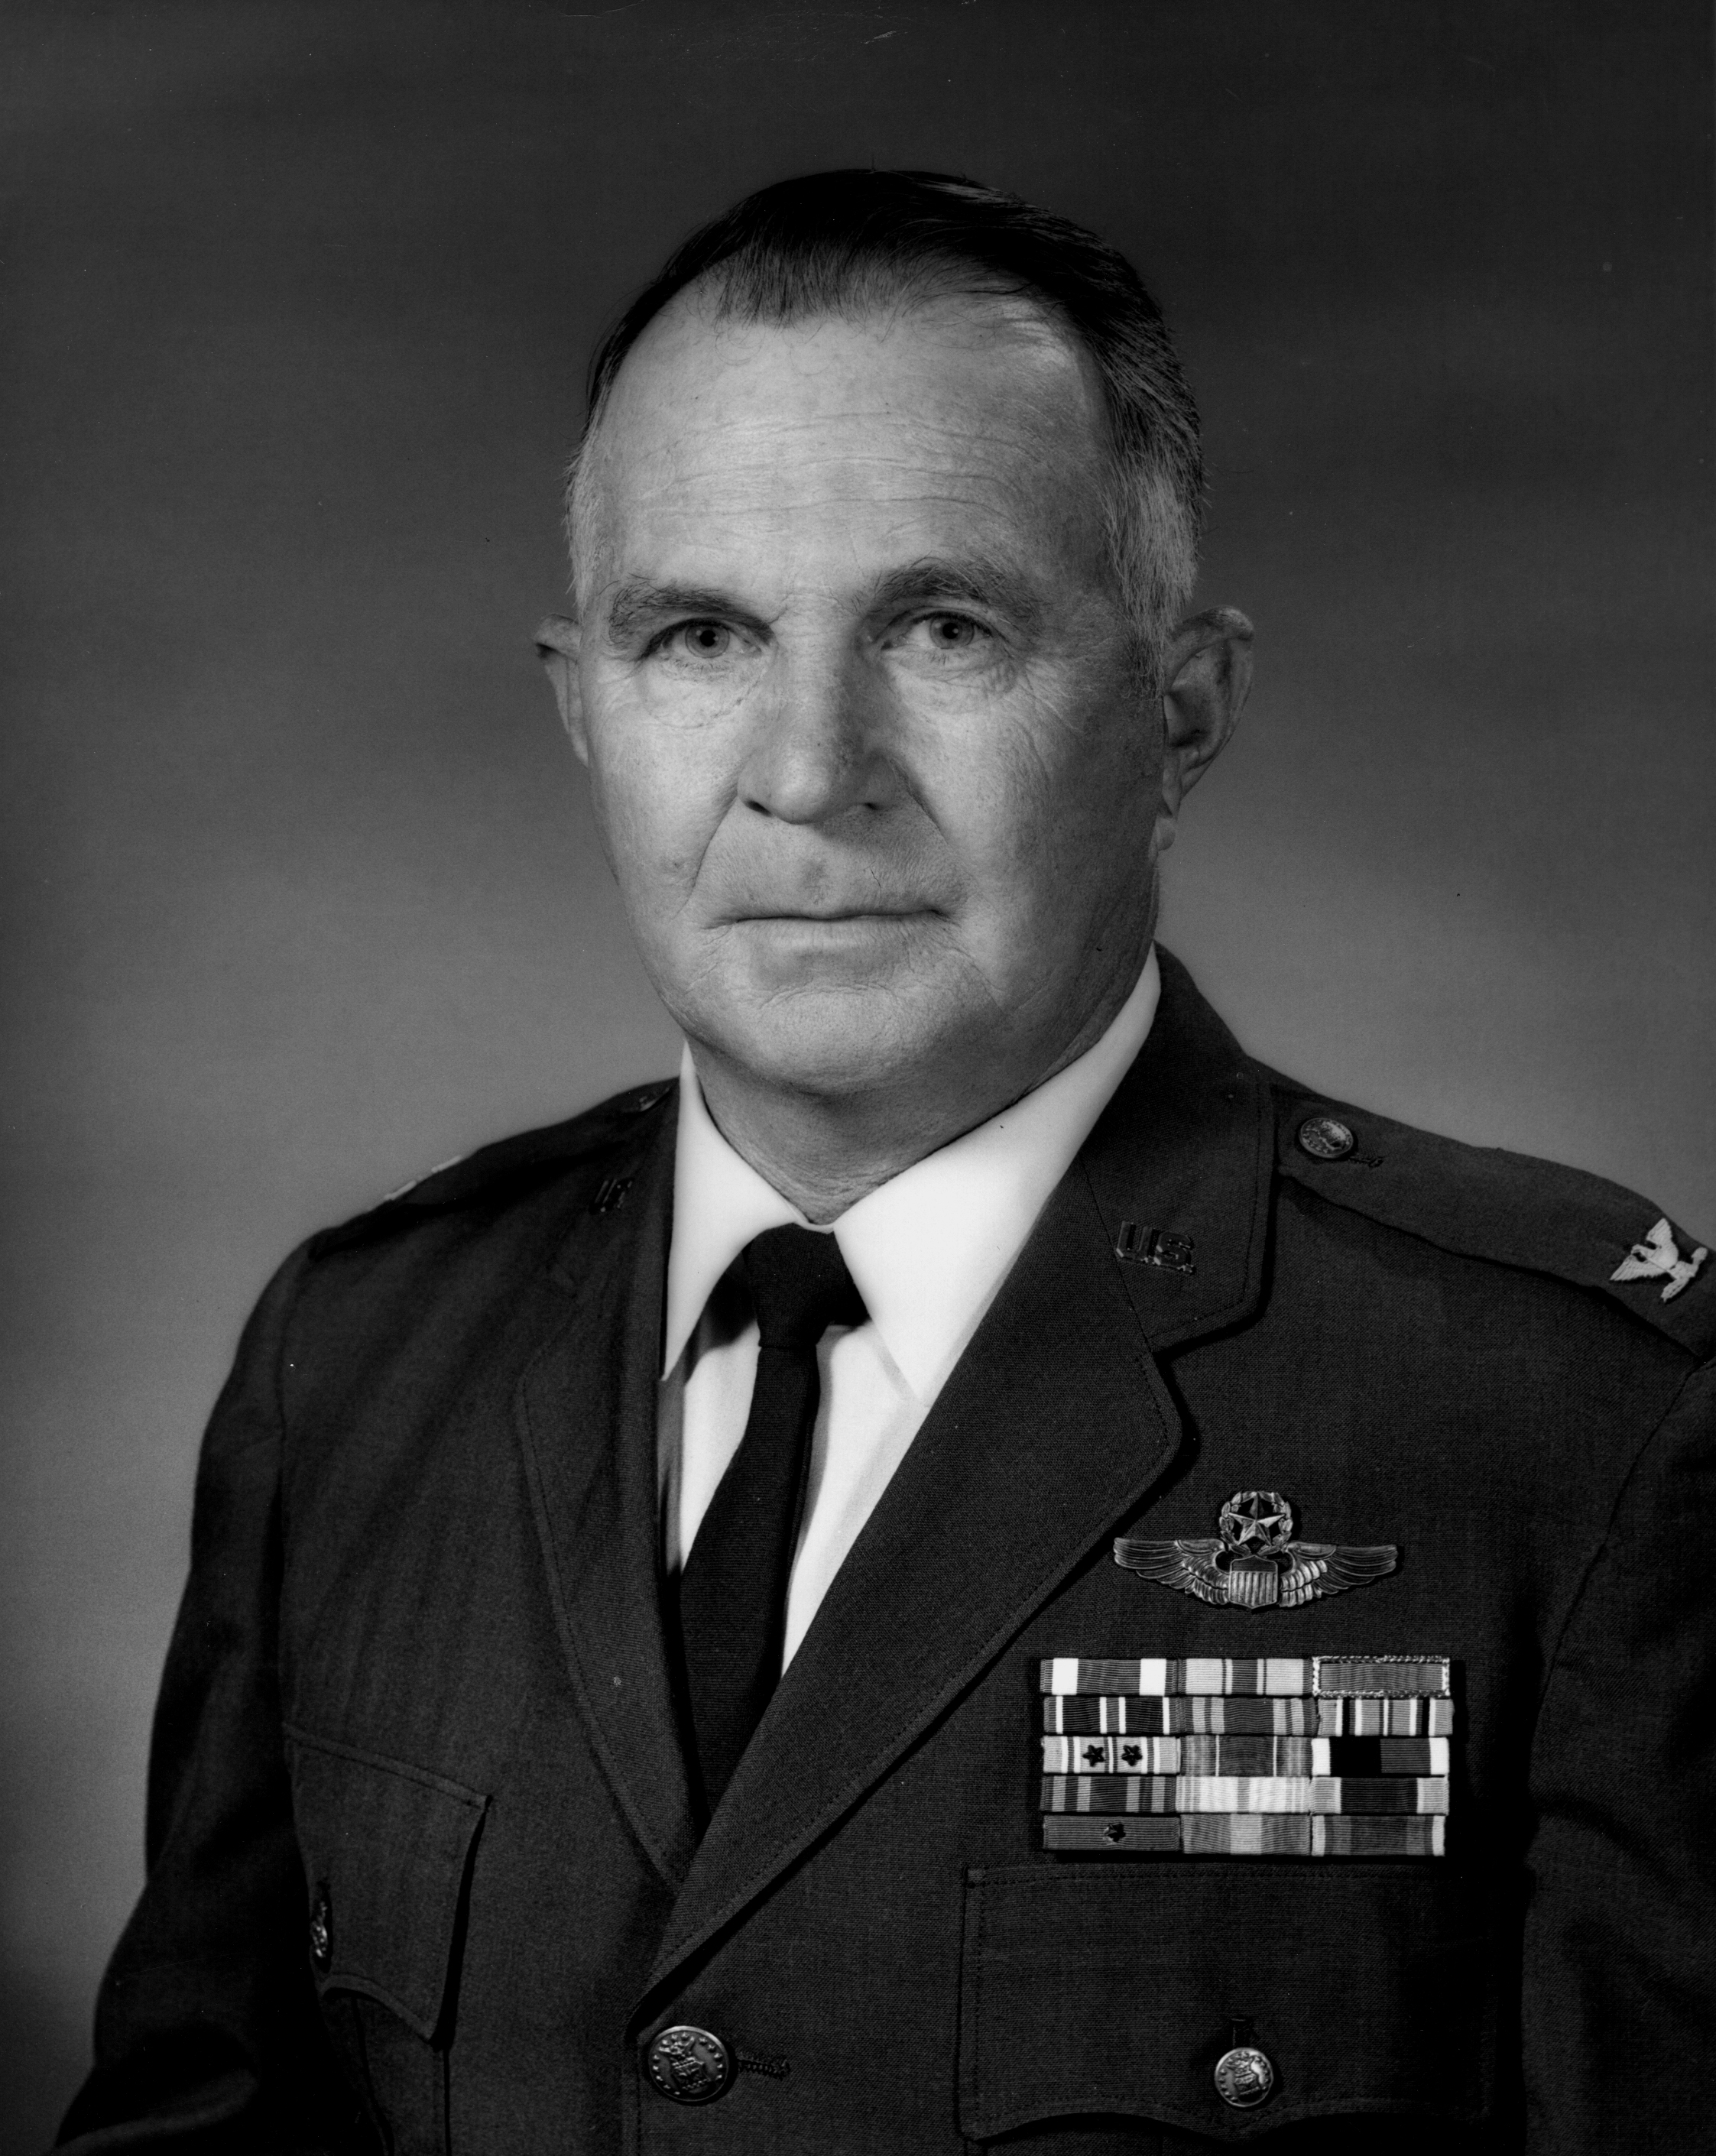 Brigadier General Douglass N. Presley